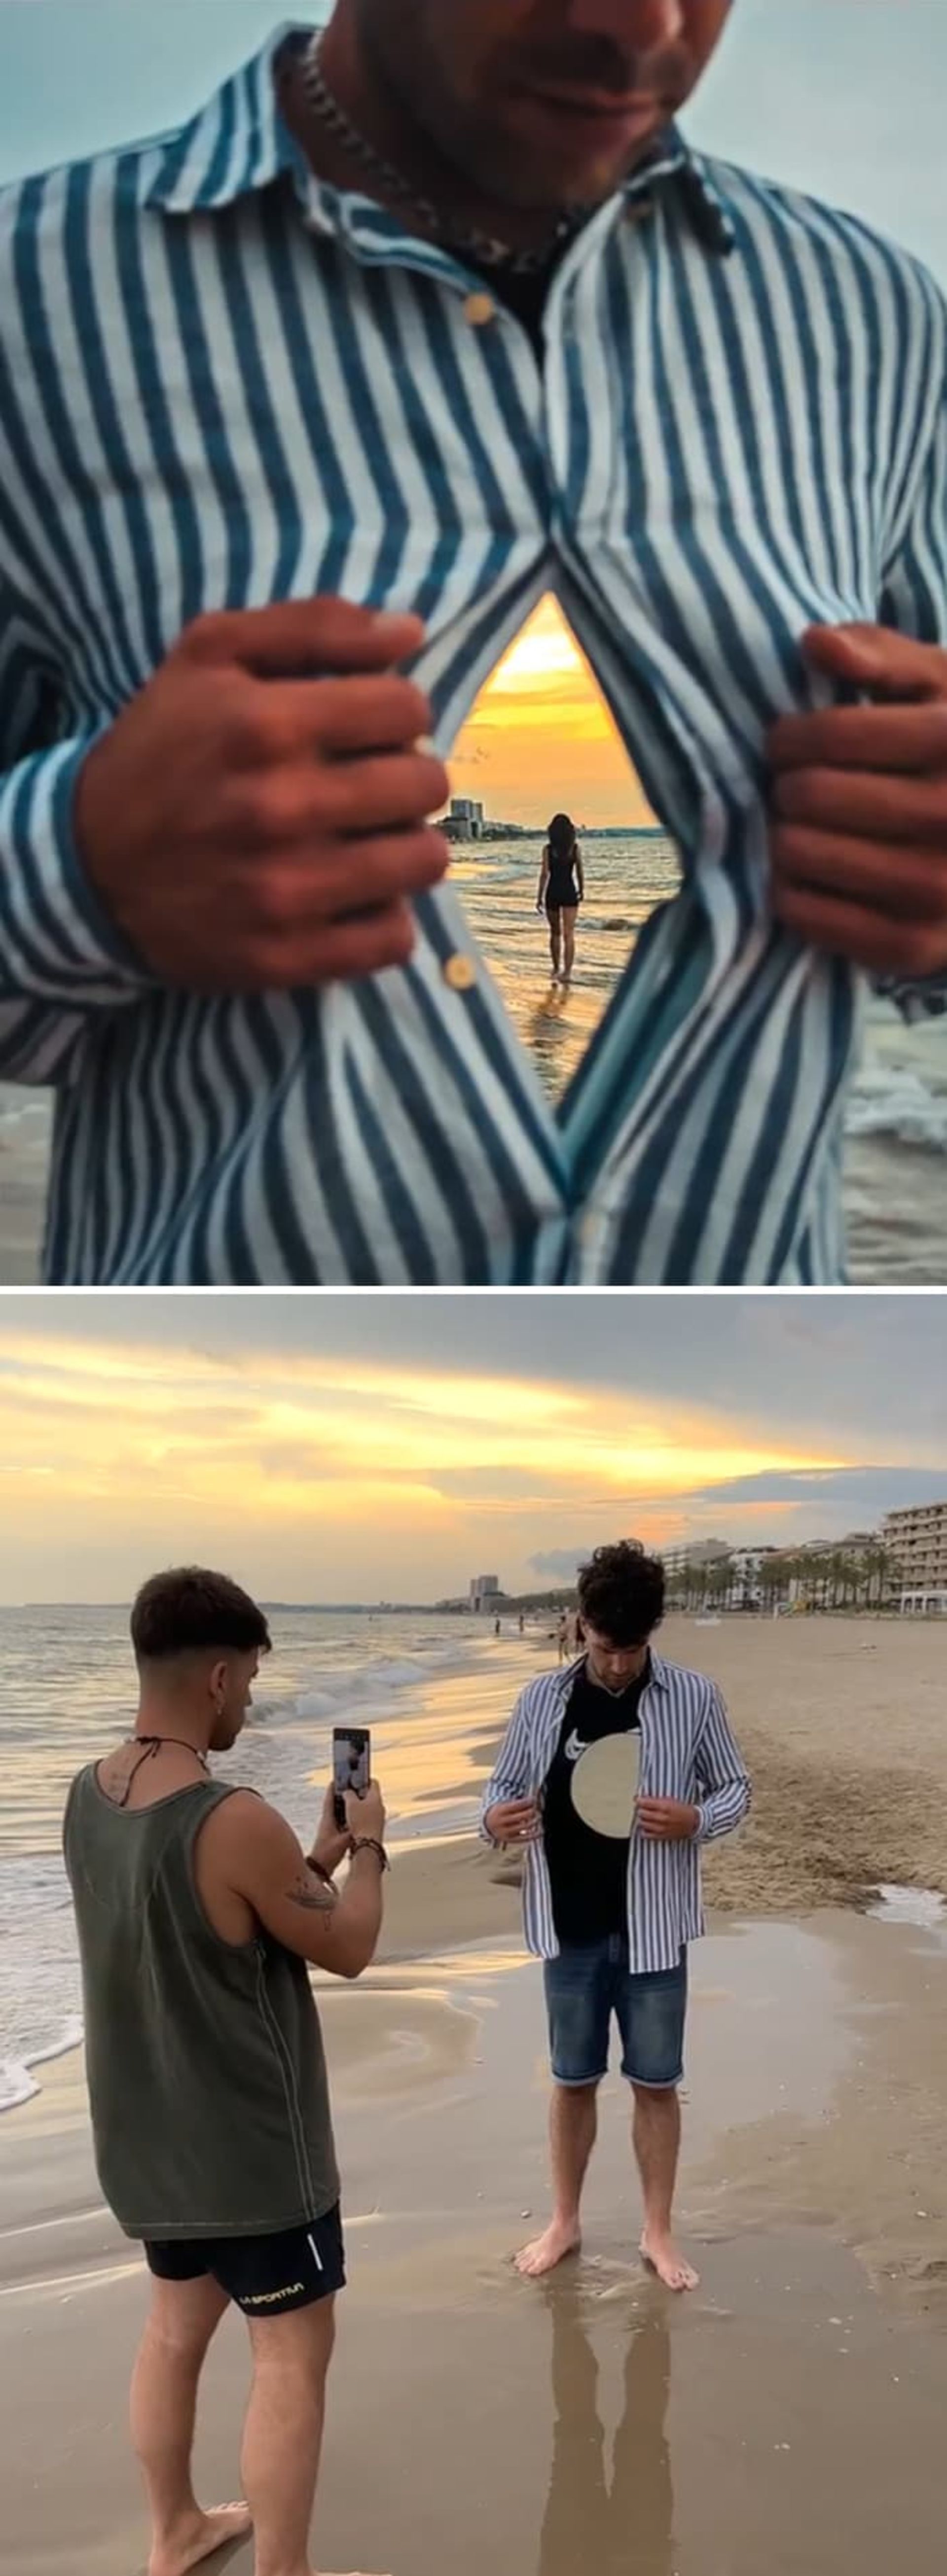 مرد در ساحل تکنیک عکاسی اینستاگرامی